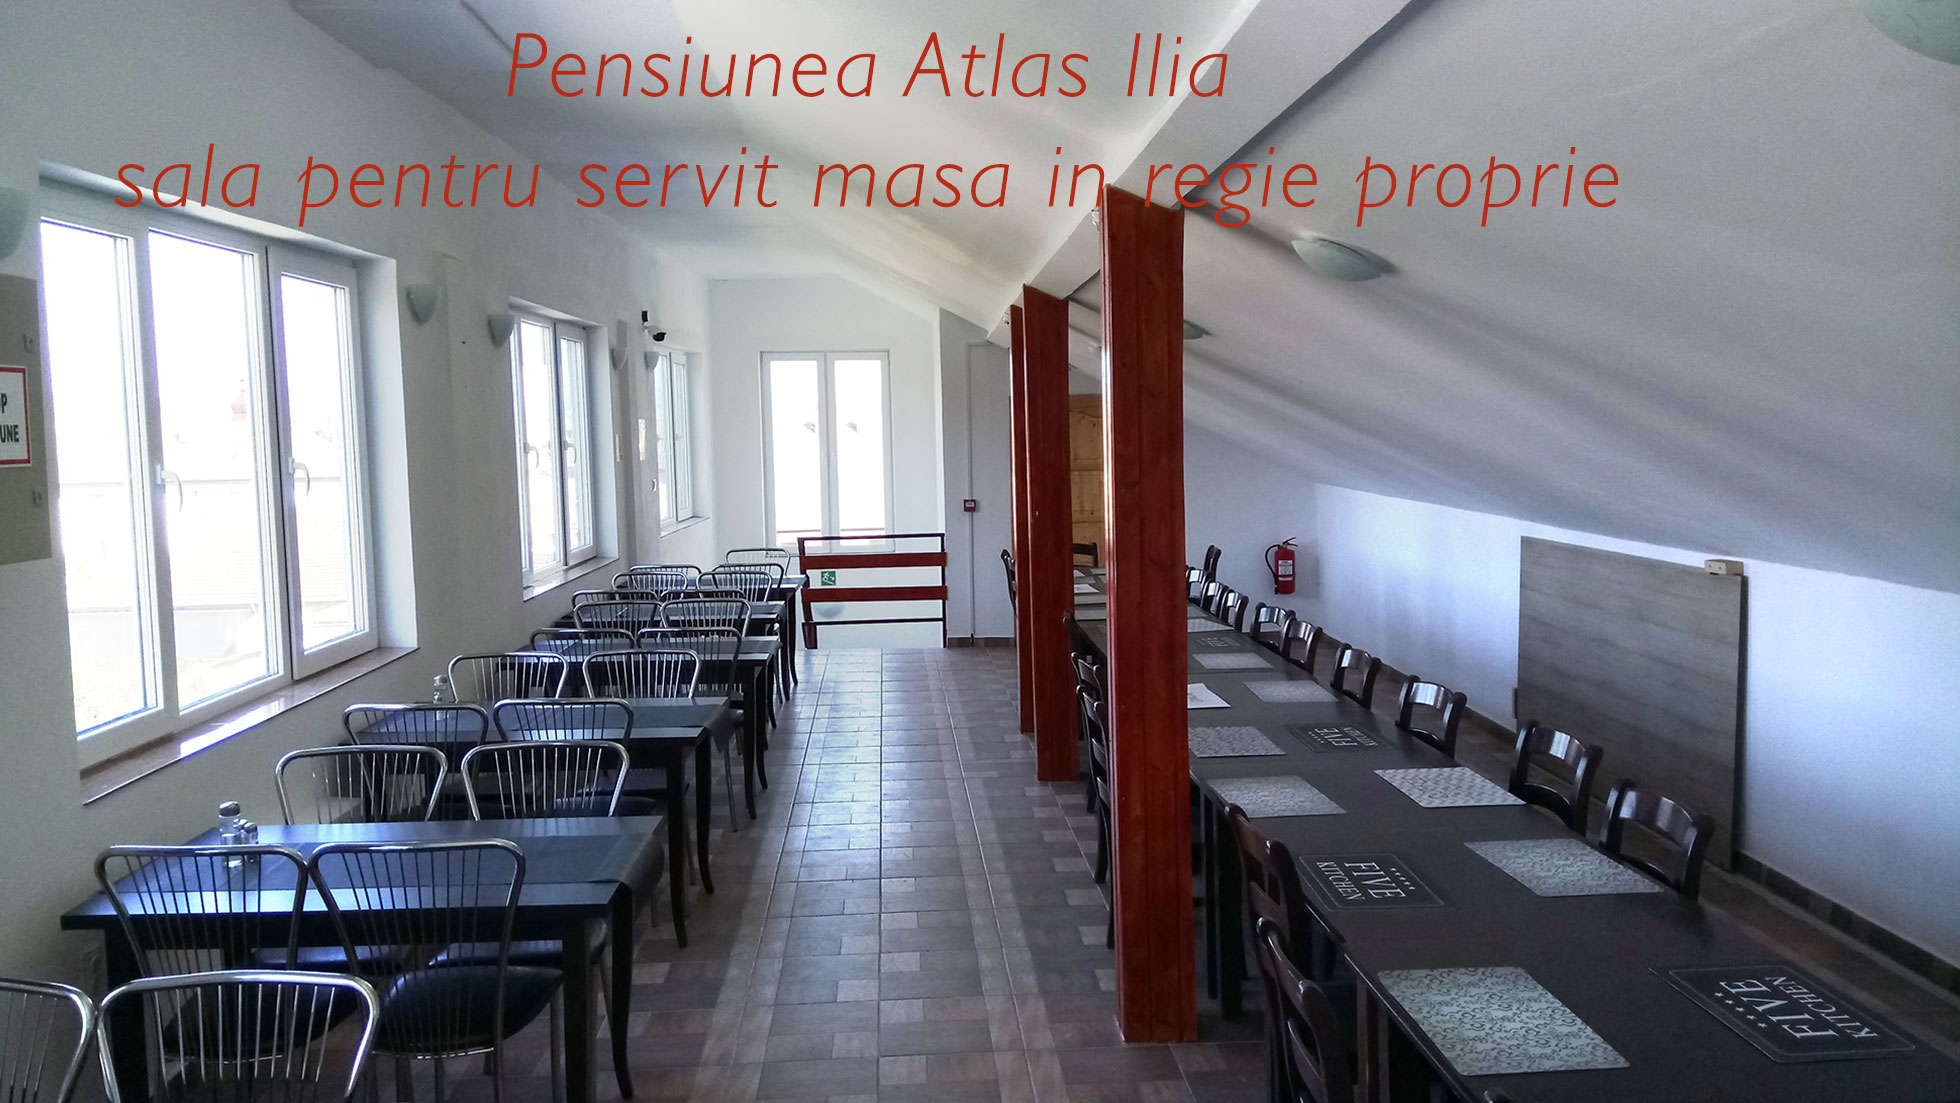 Pensiunea Atlas Ilia - sala pentru servit masa